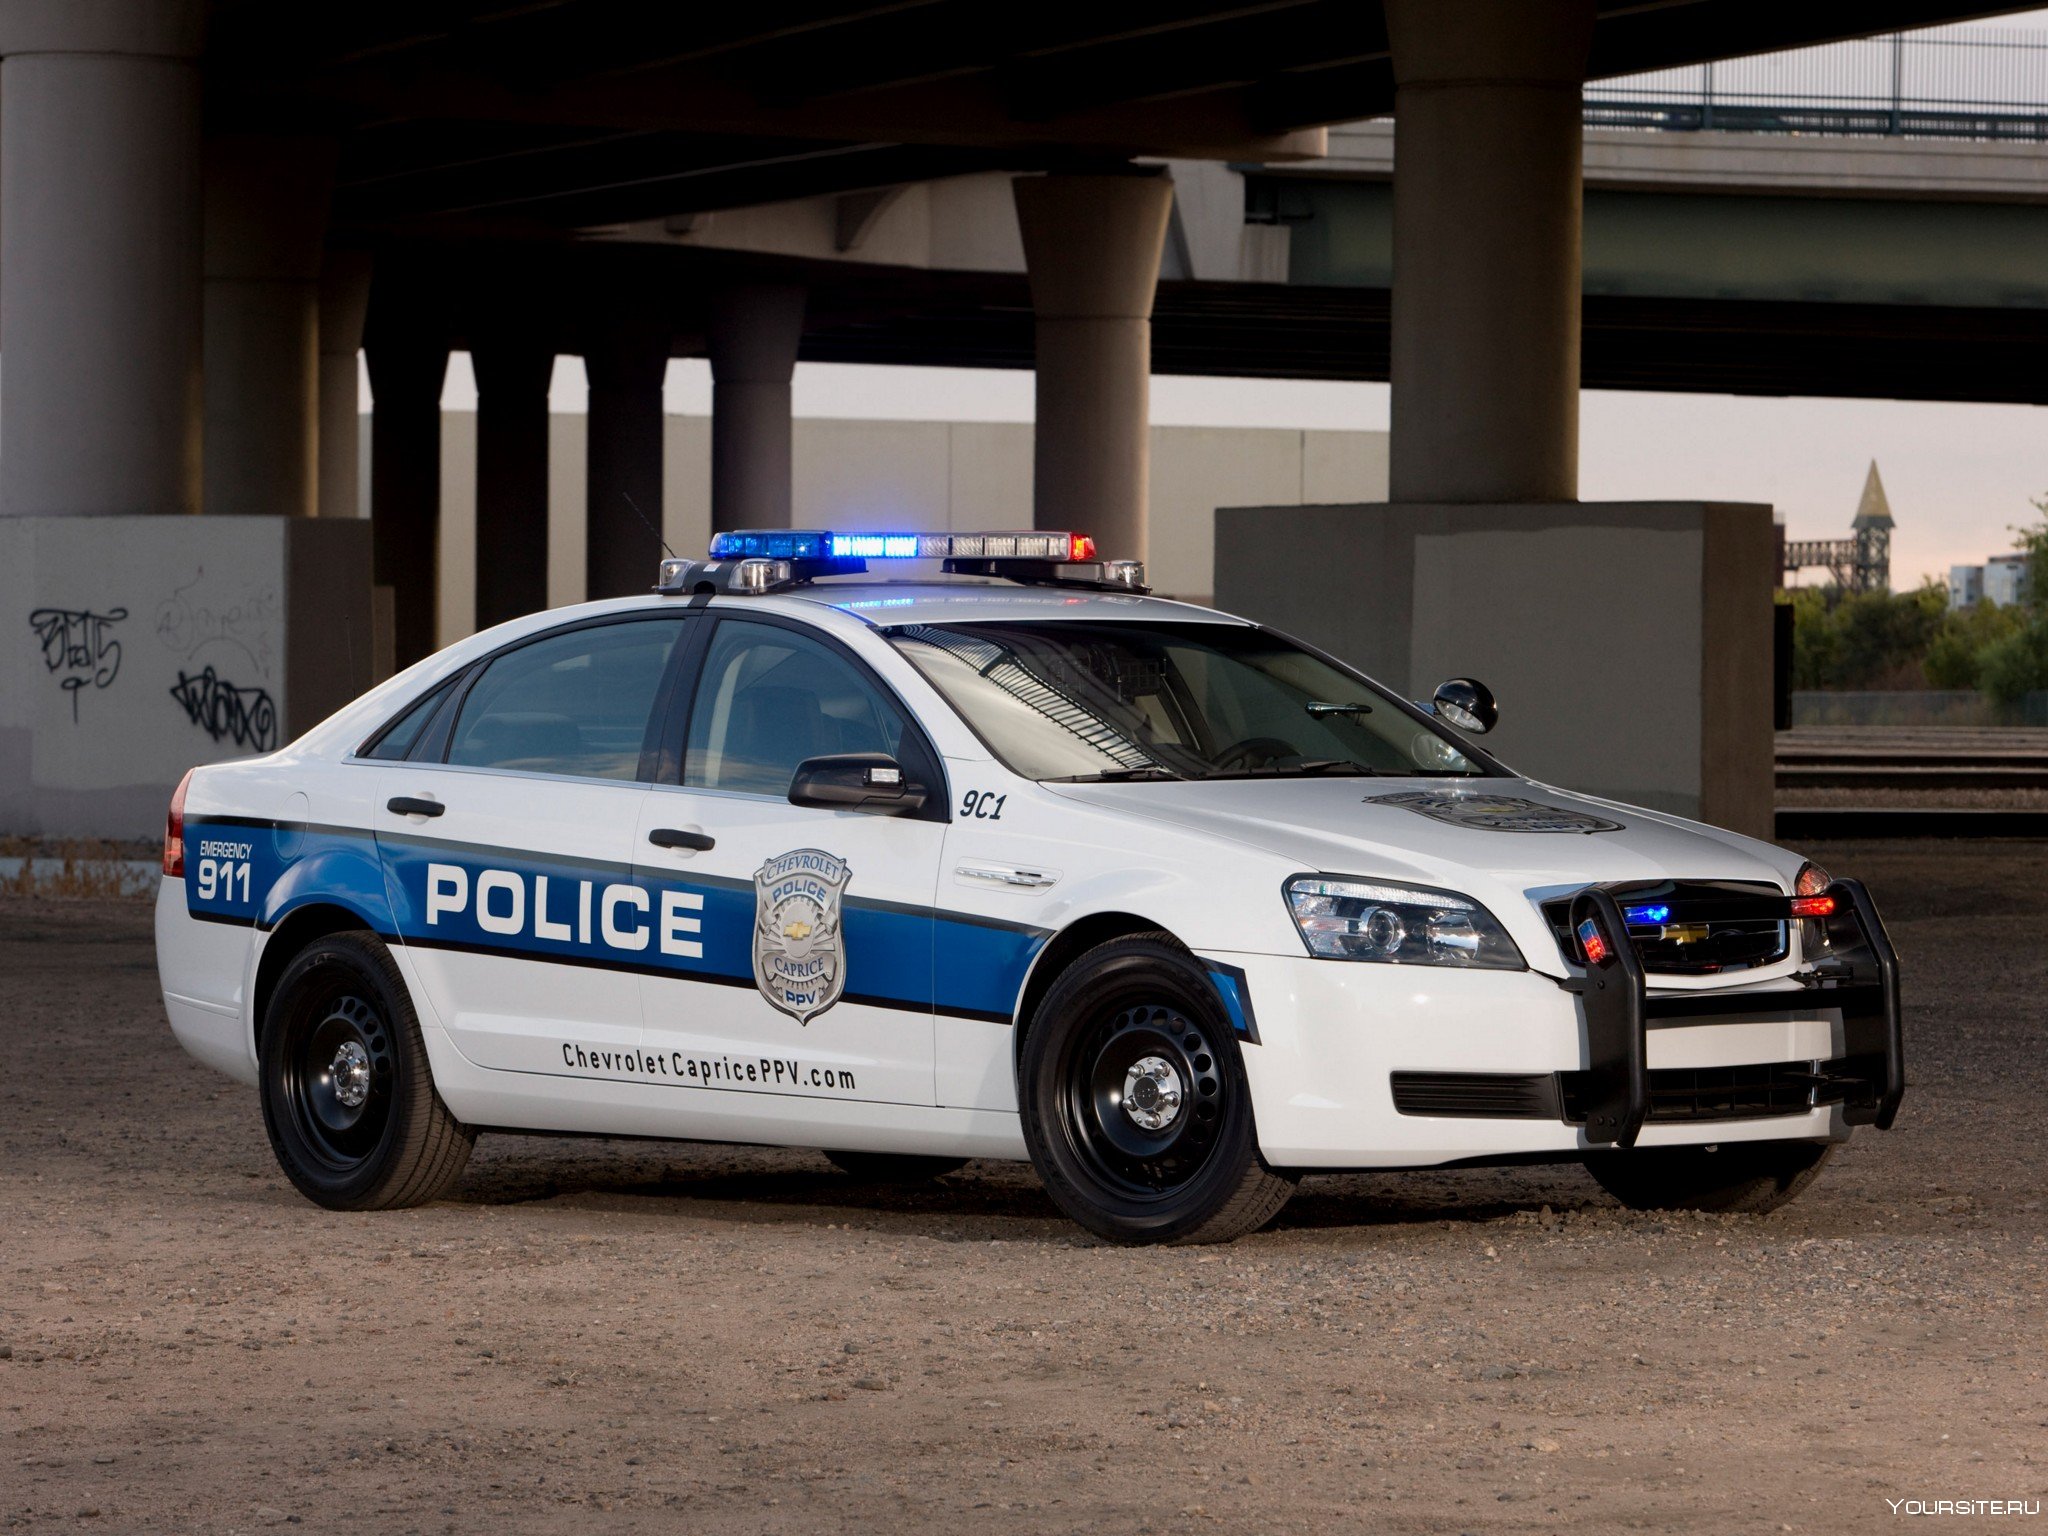 Chevrolet Caprice 9c1 Police. Полицейская машина другая